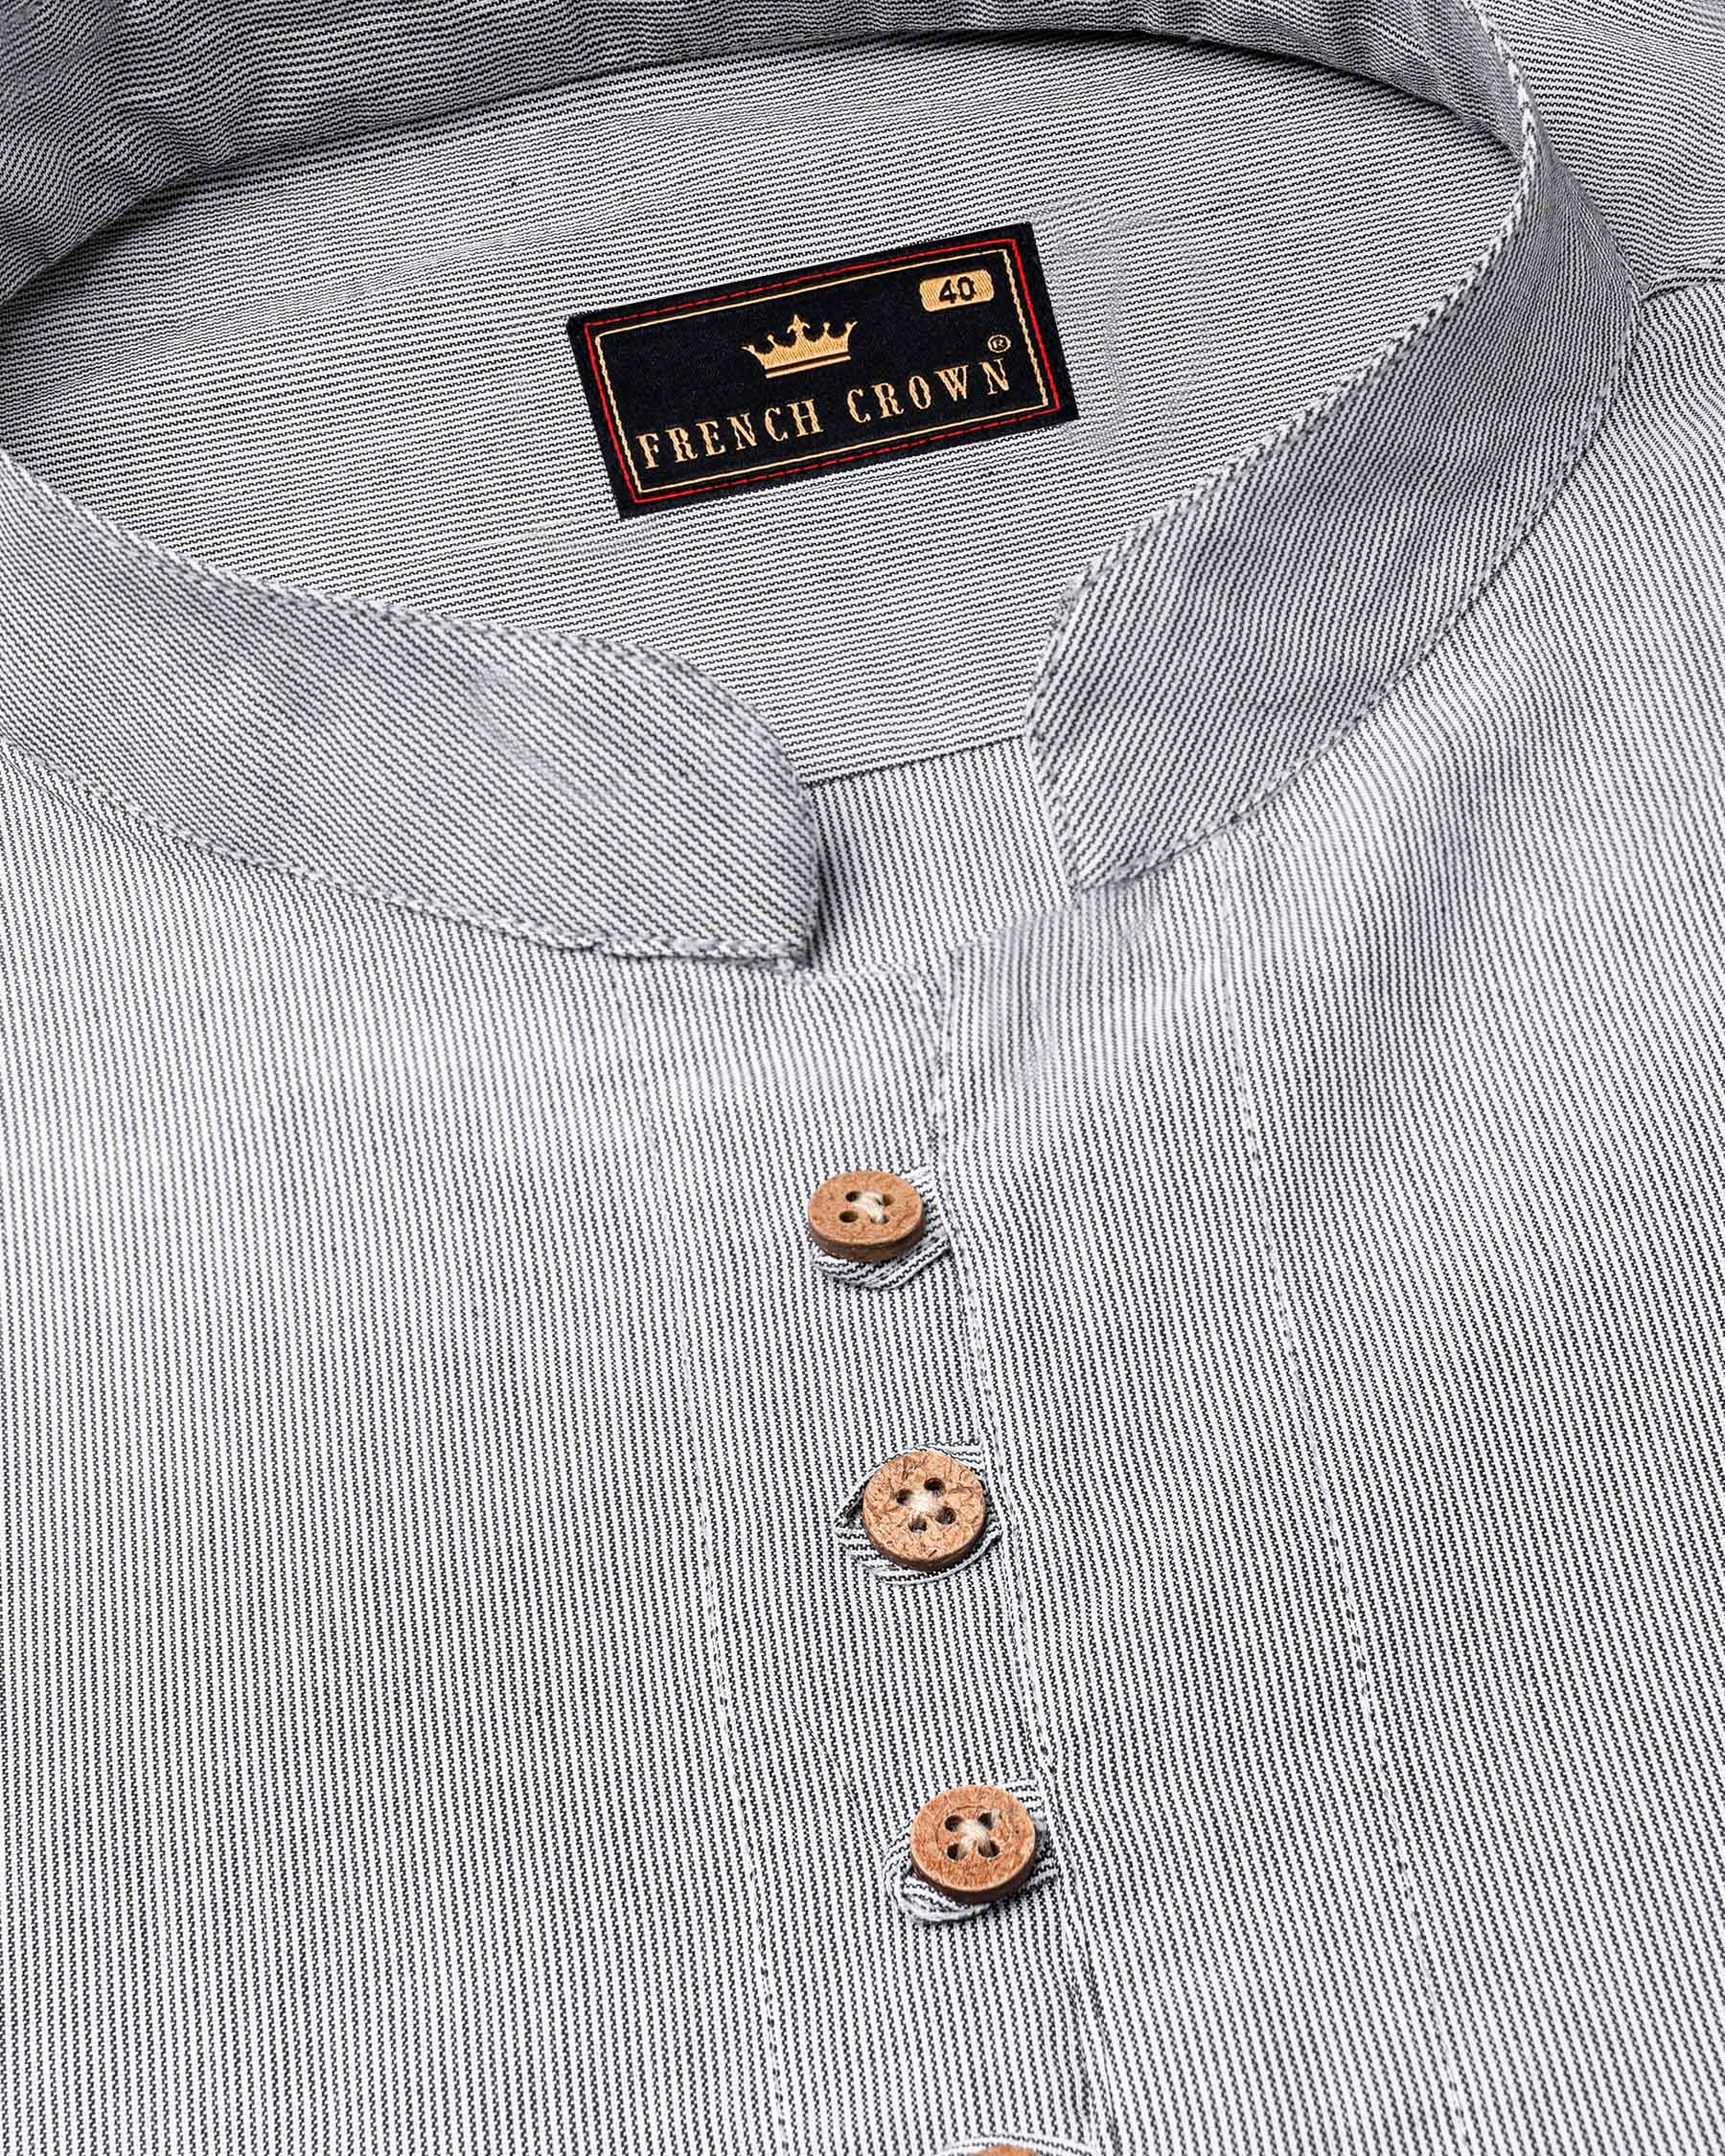 Wenge Gray Pinstriped Premium Cotton Kurta Shirt